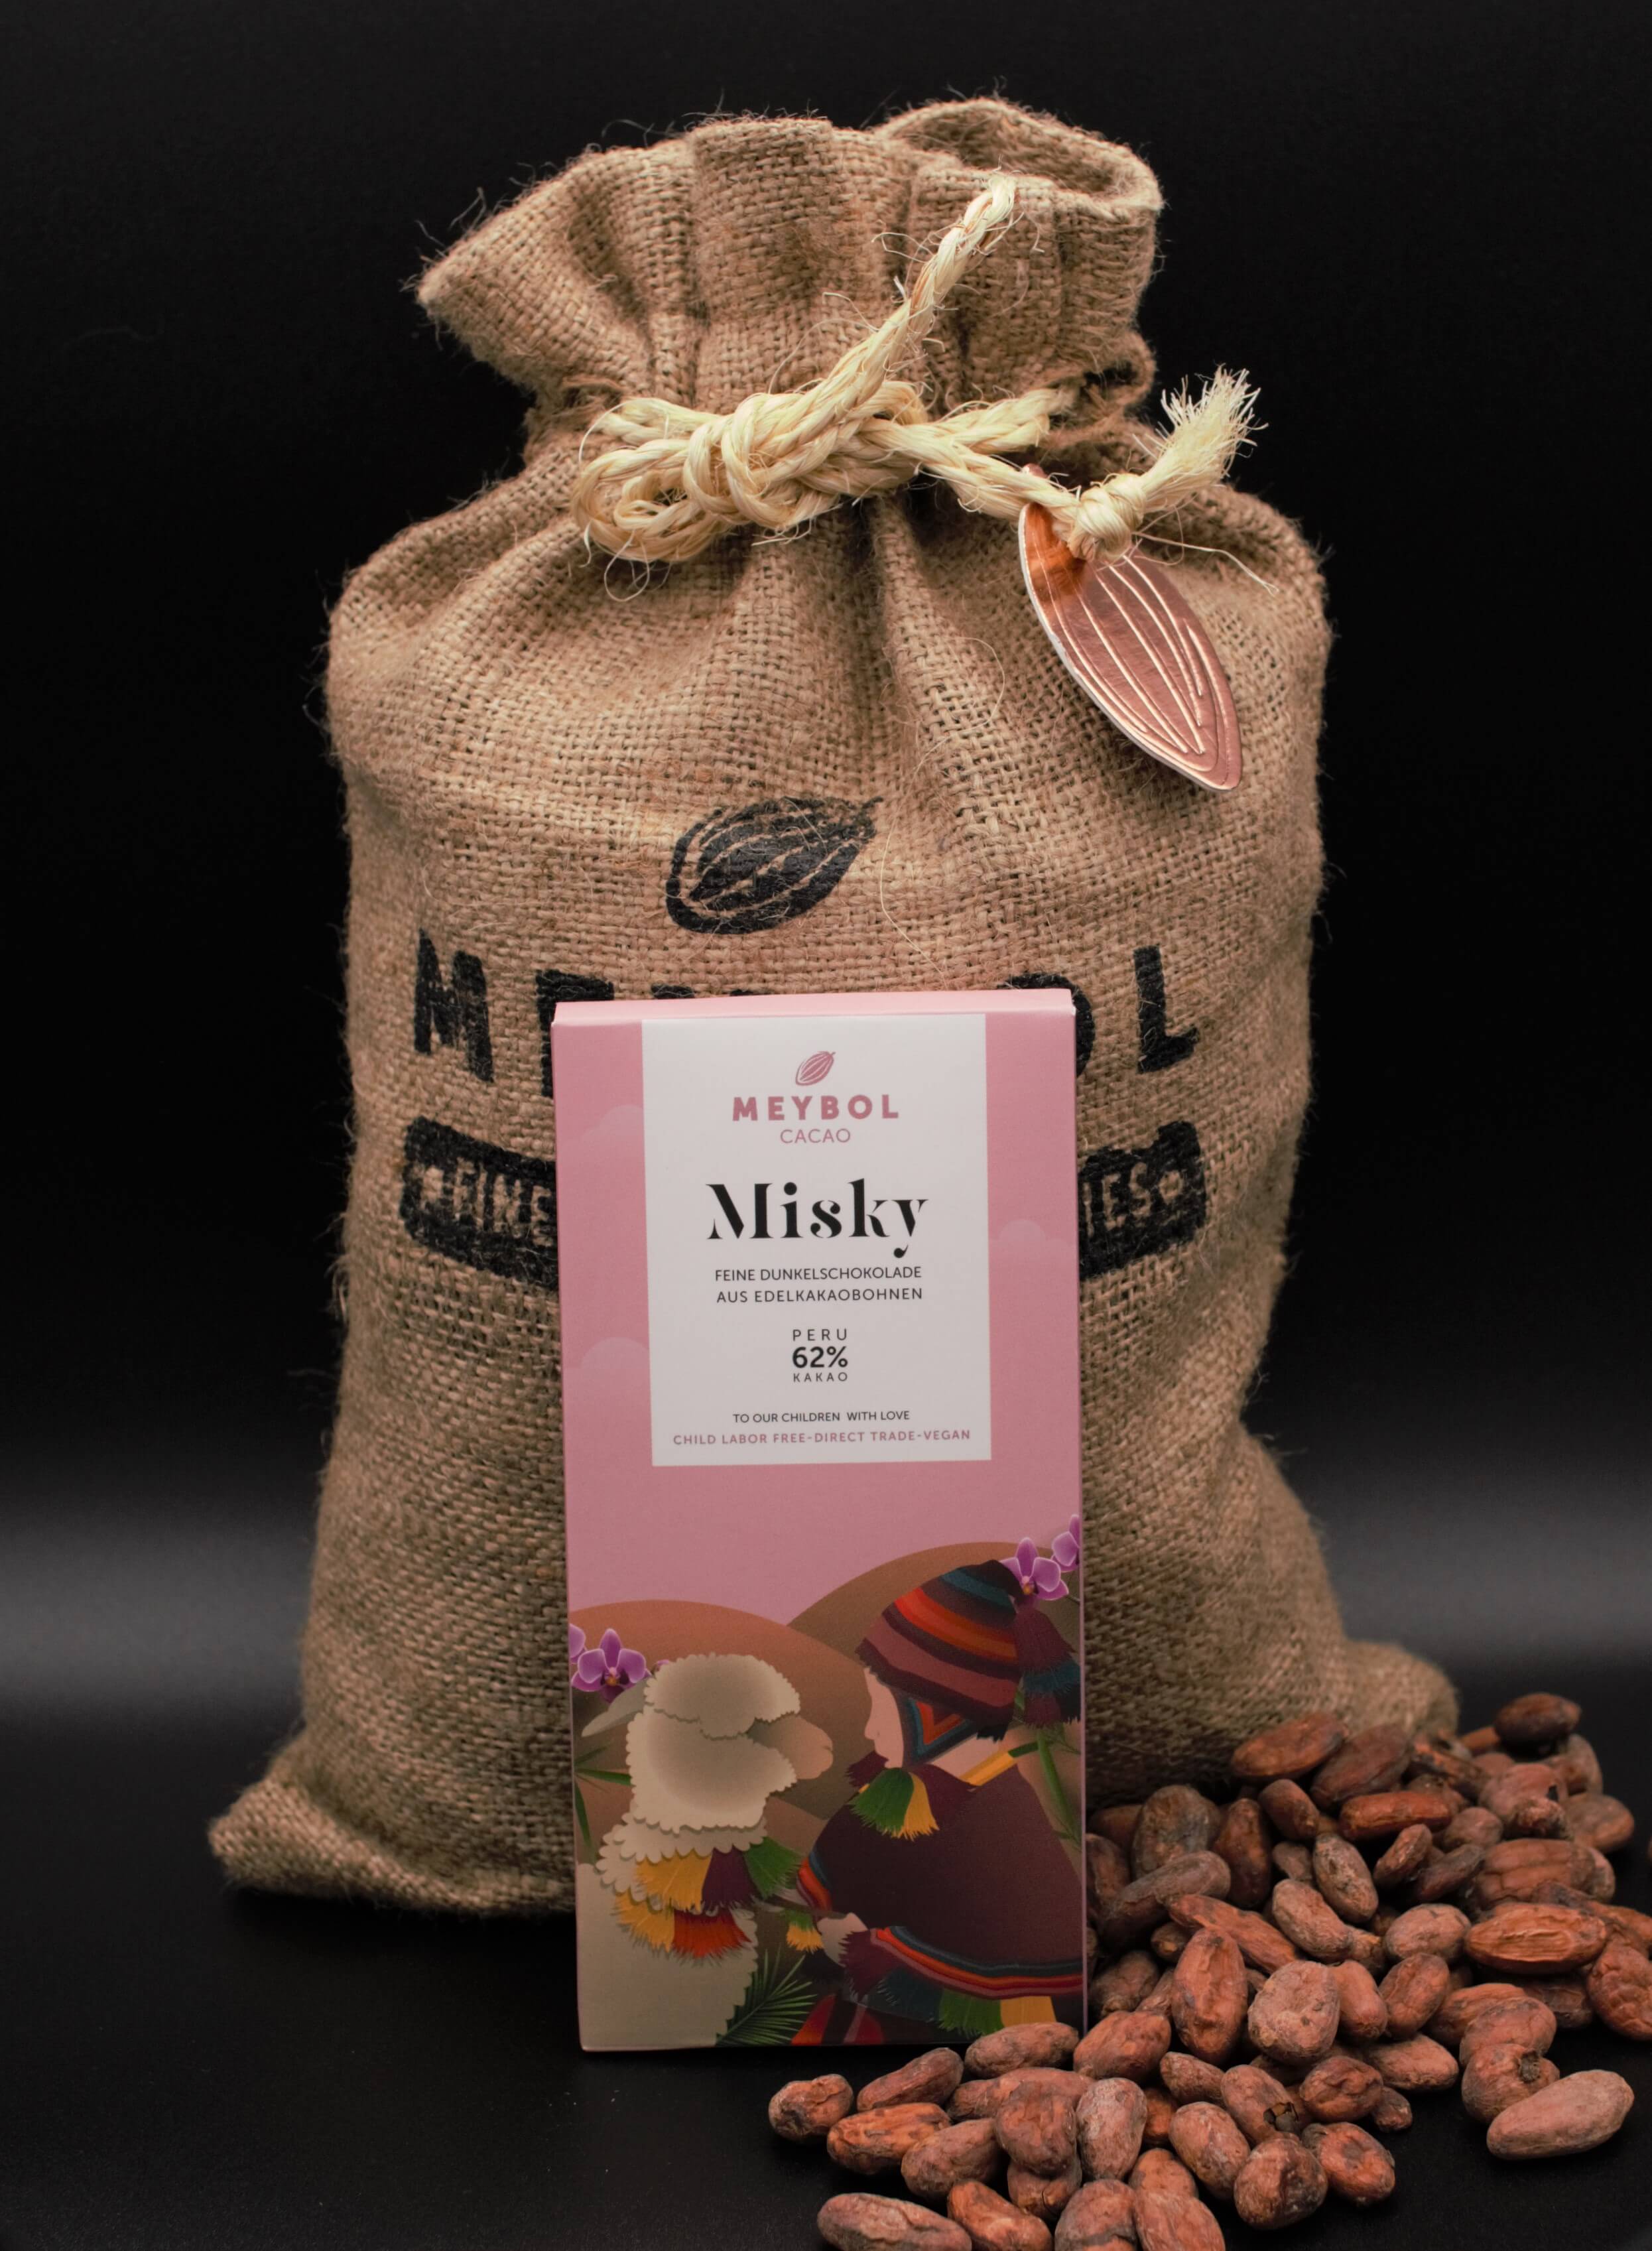 Misky Schokolade - Projekt für die Vermittlung des Wertes von Nachhaltigkeit -